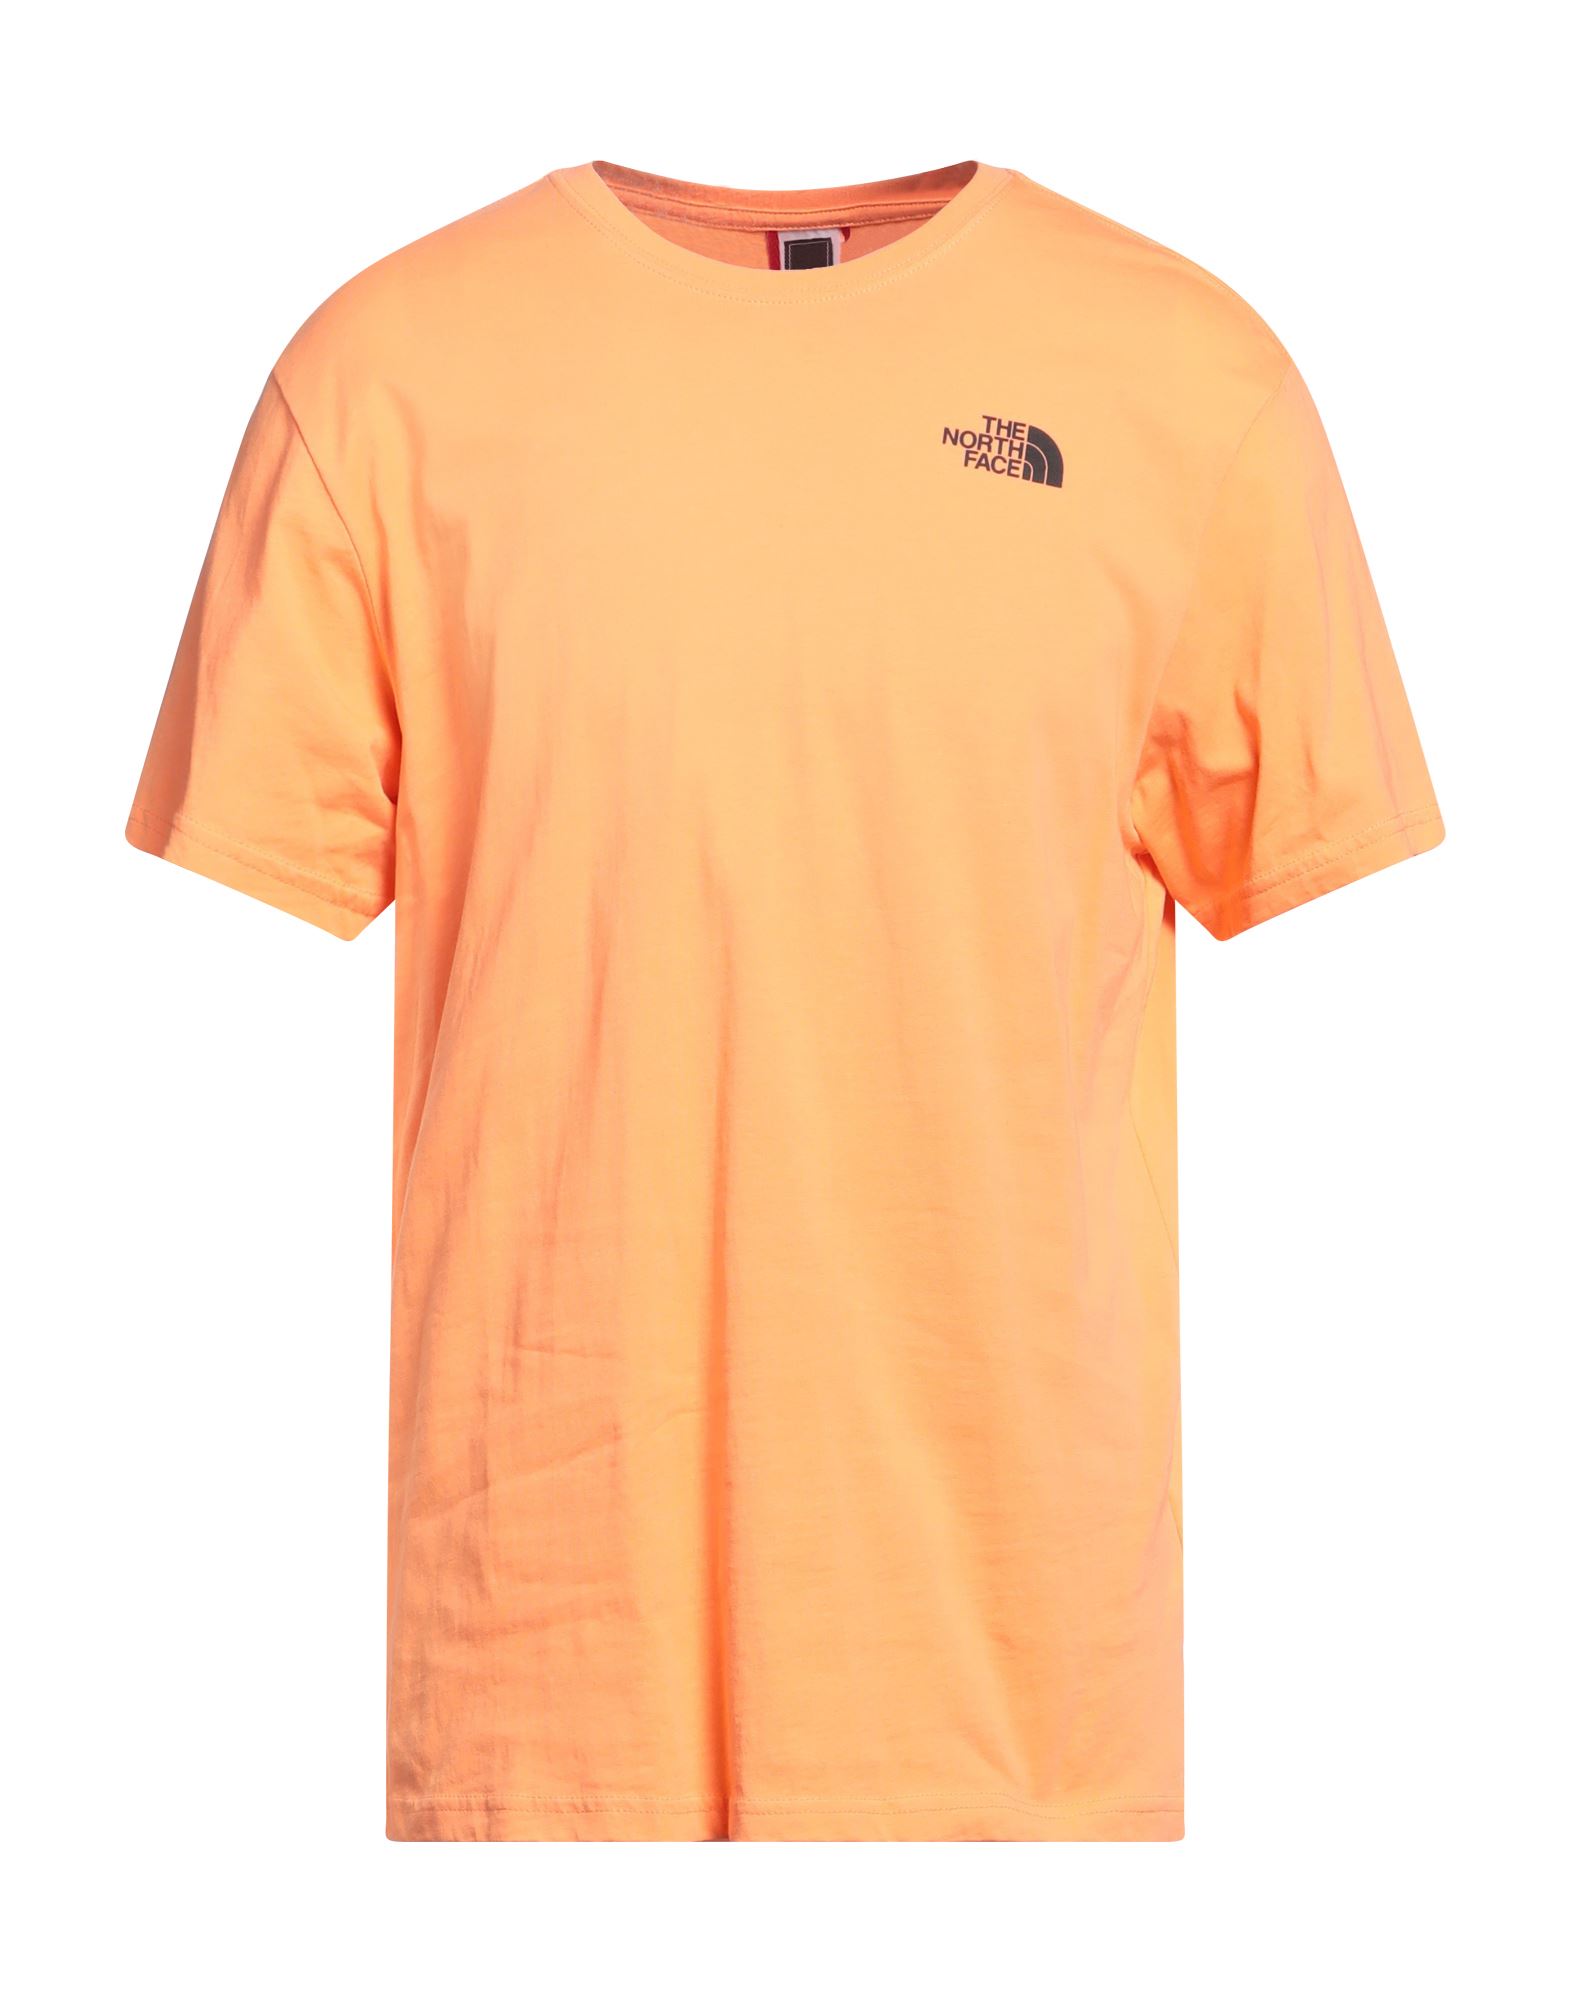 THE NORTH FACE T-shirts Herren Orange von THE NORTH FACE